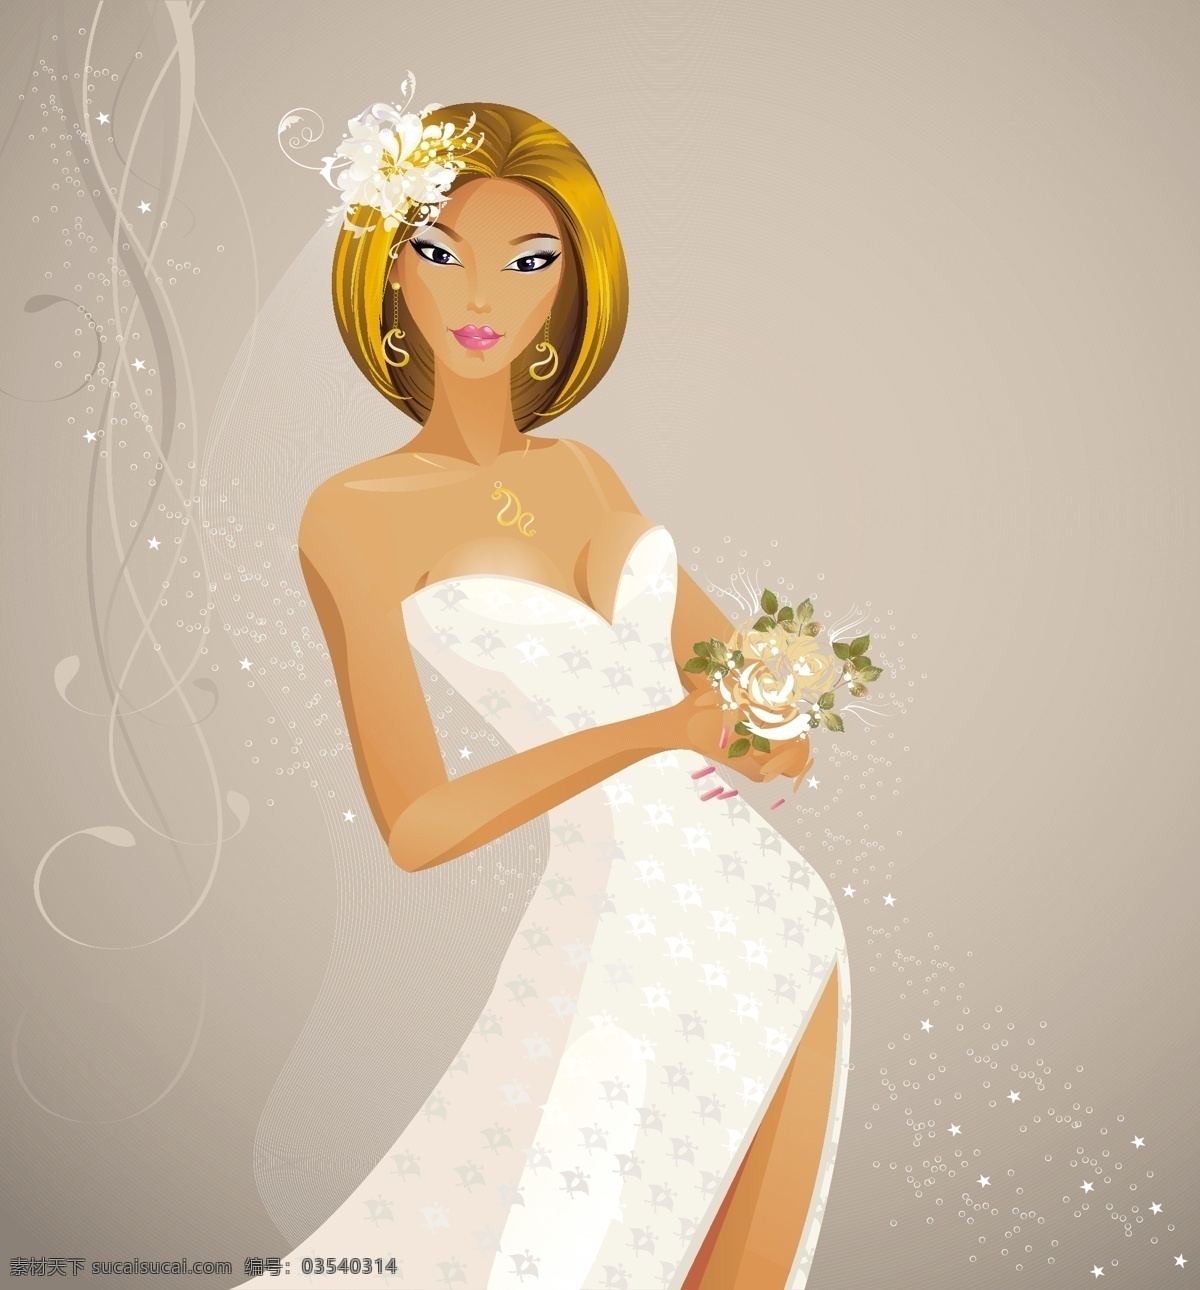 细 线条 艺术 婚纱 背景 矢量 婚礼 精细 图案 新娘 性感 的背景下 美 矢量图 花纹花边